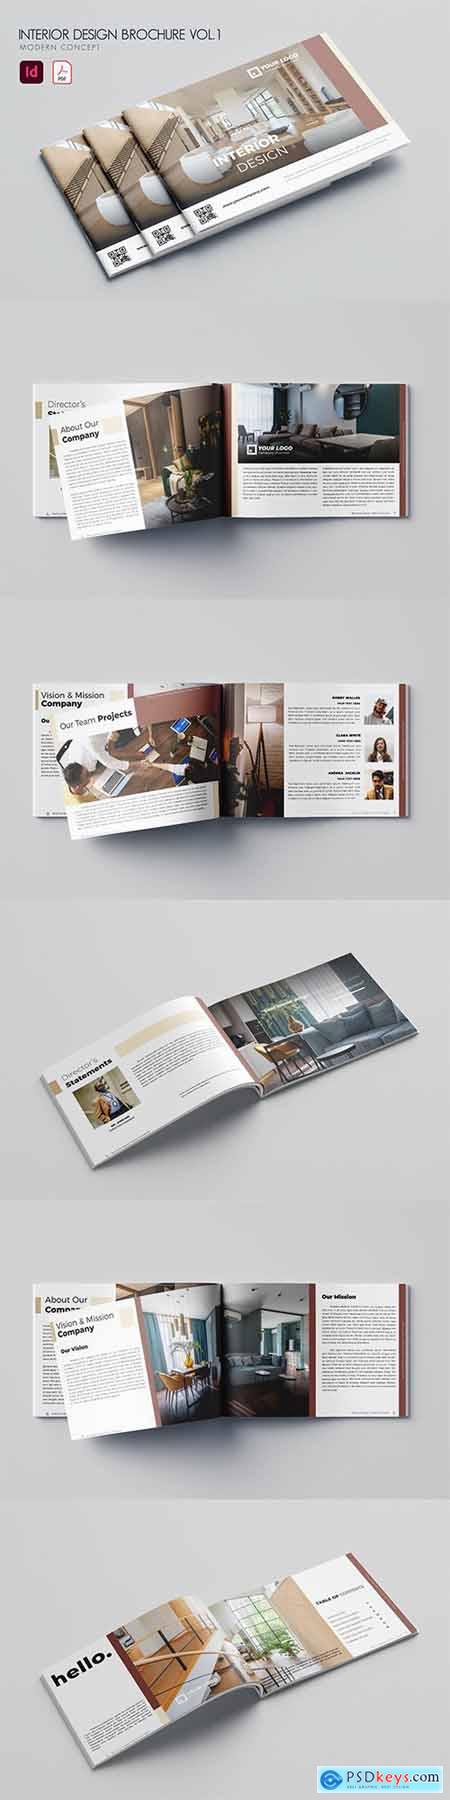 Interior Design Brochure Vol.1 KBSH2KF